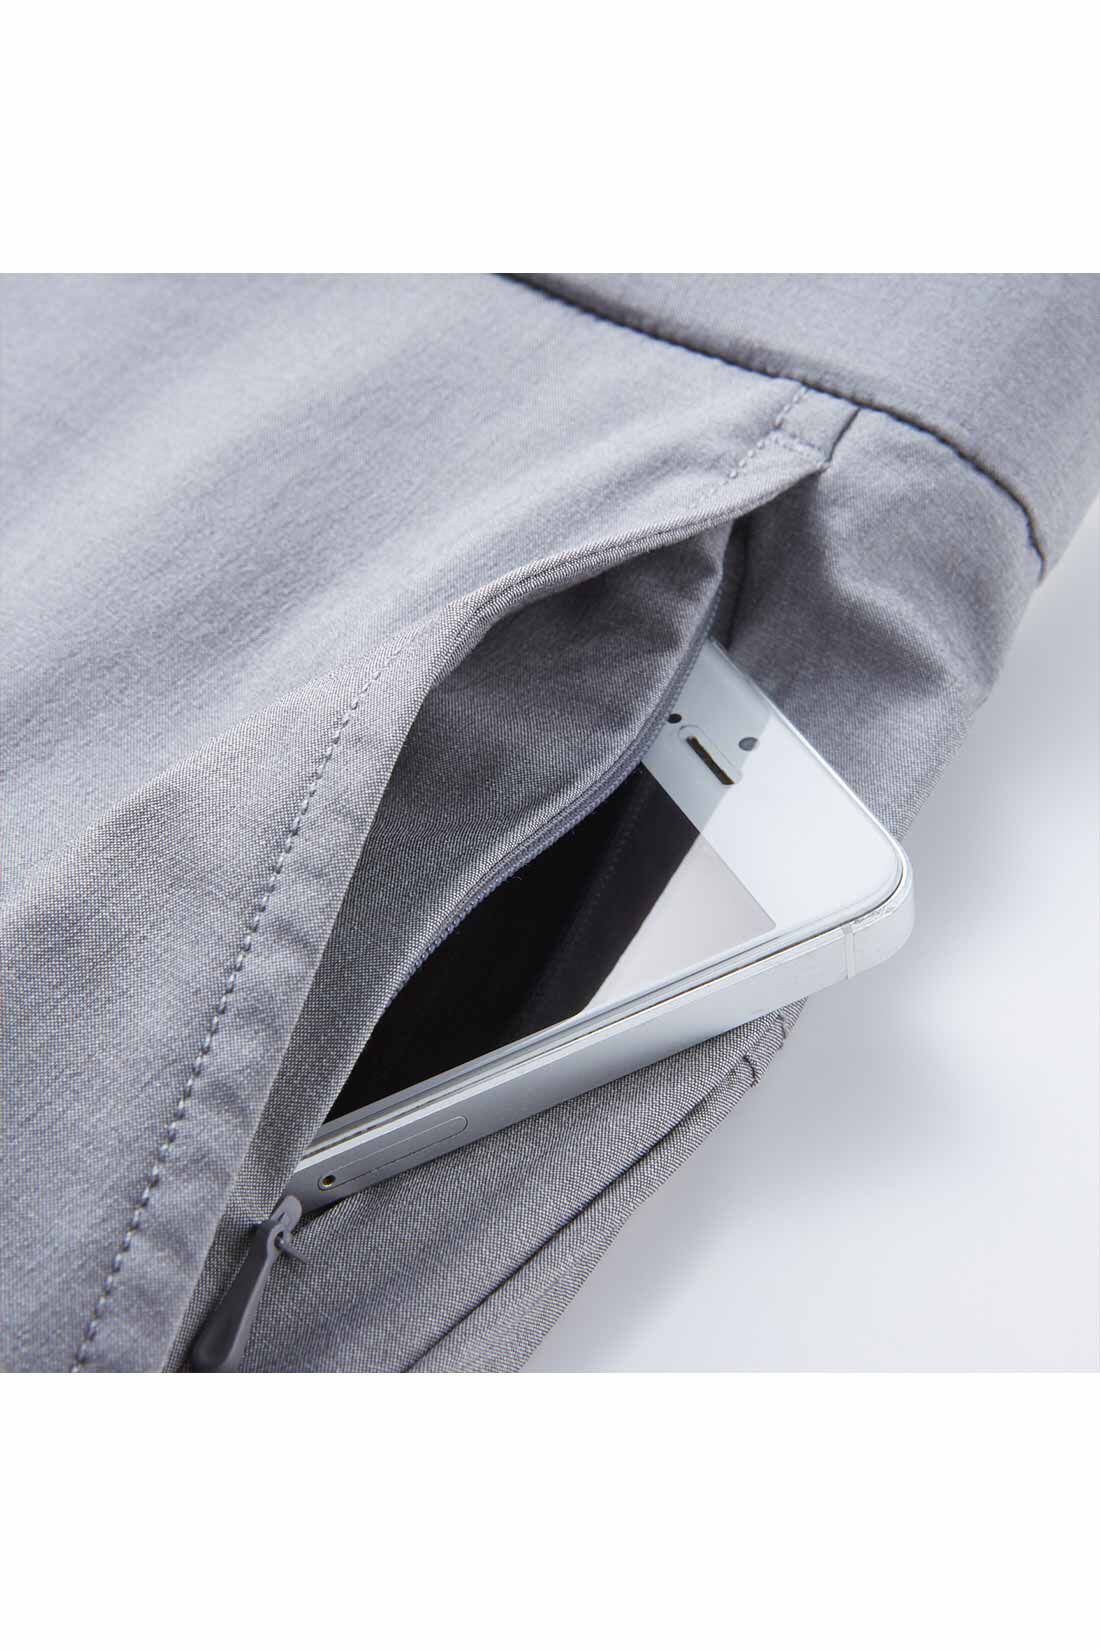 Real Stock|IEDIT[イディット]　UVカット・吸汗速乾・接触冷感がうれしい エア軽（かる）ライト素材の涼やかパンツ メンズ（テーパード）〈グレー〉|左わきのポケットはダブルポケット仕様。落下防止のコンシールファスナー付き。